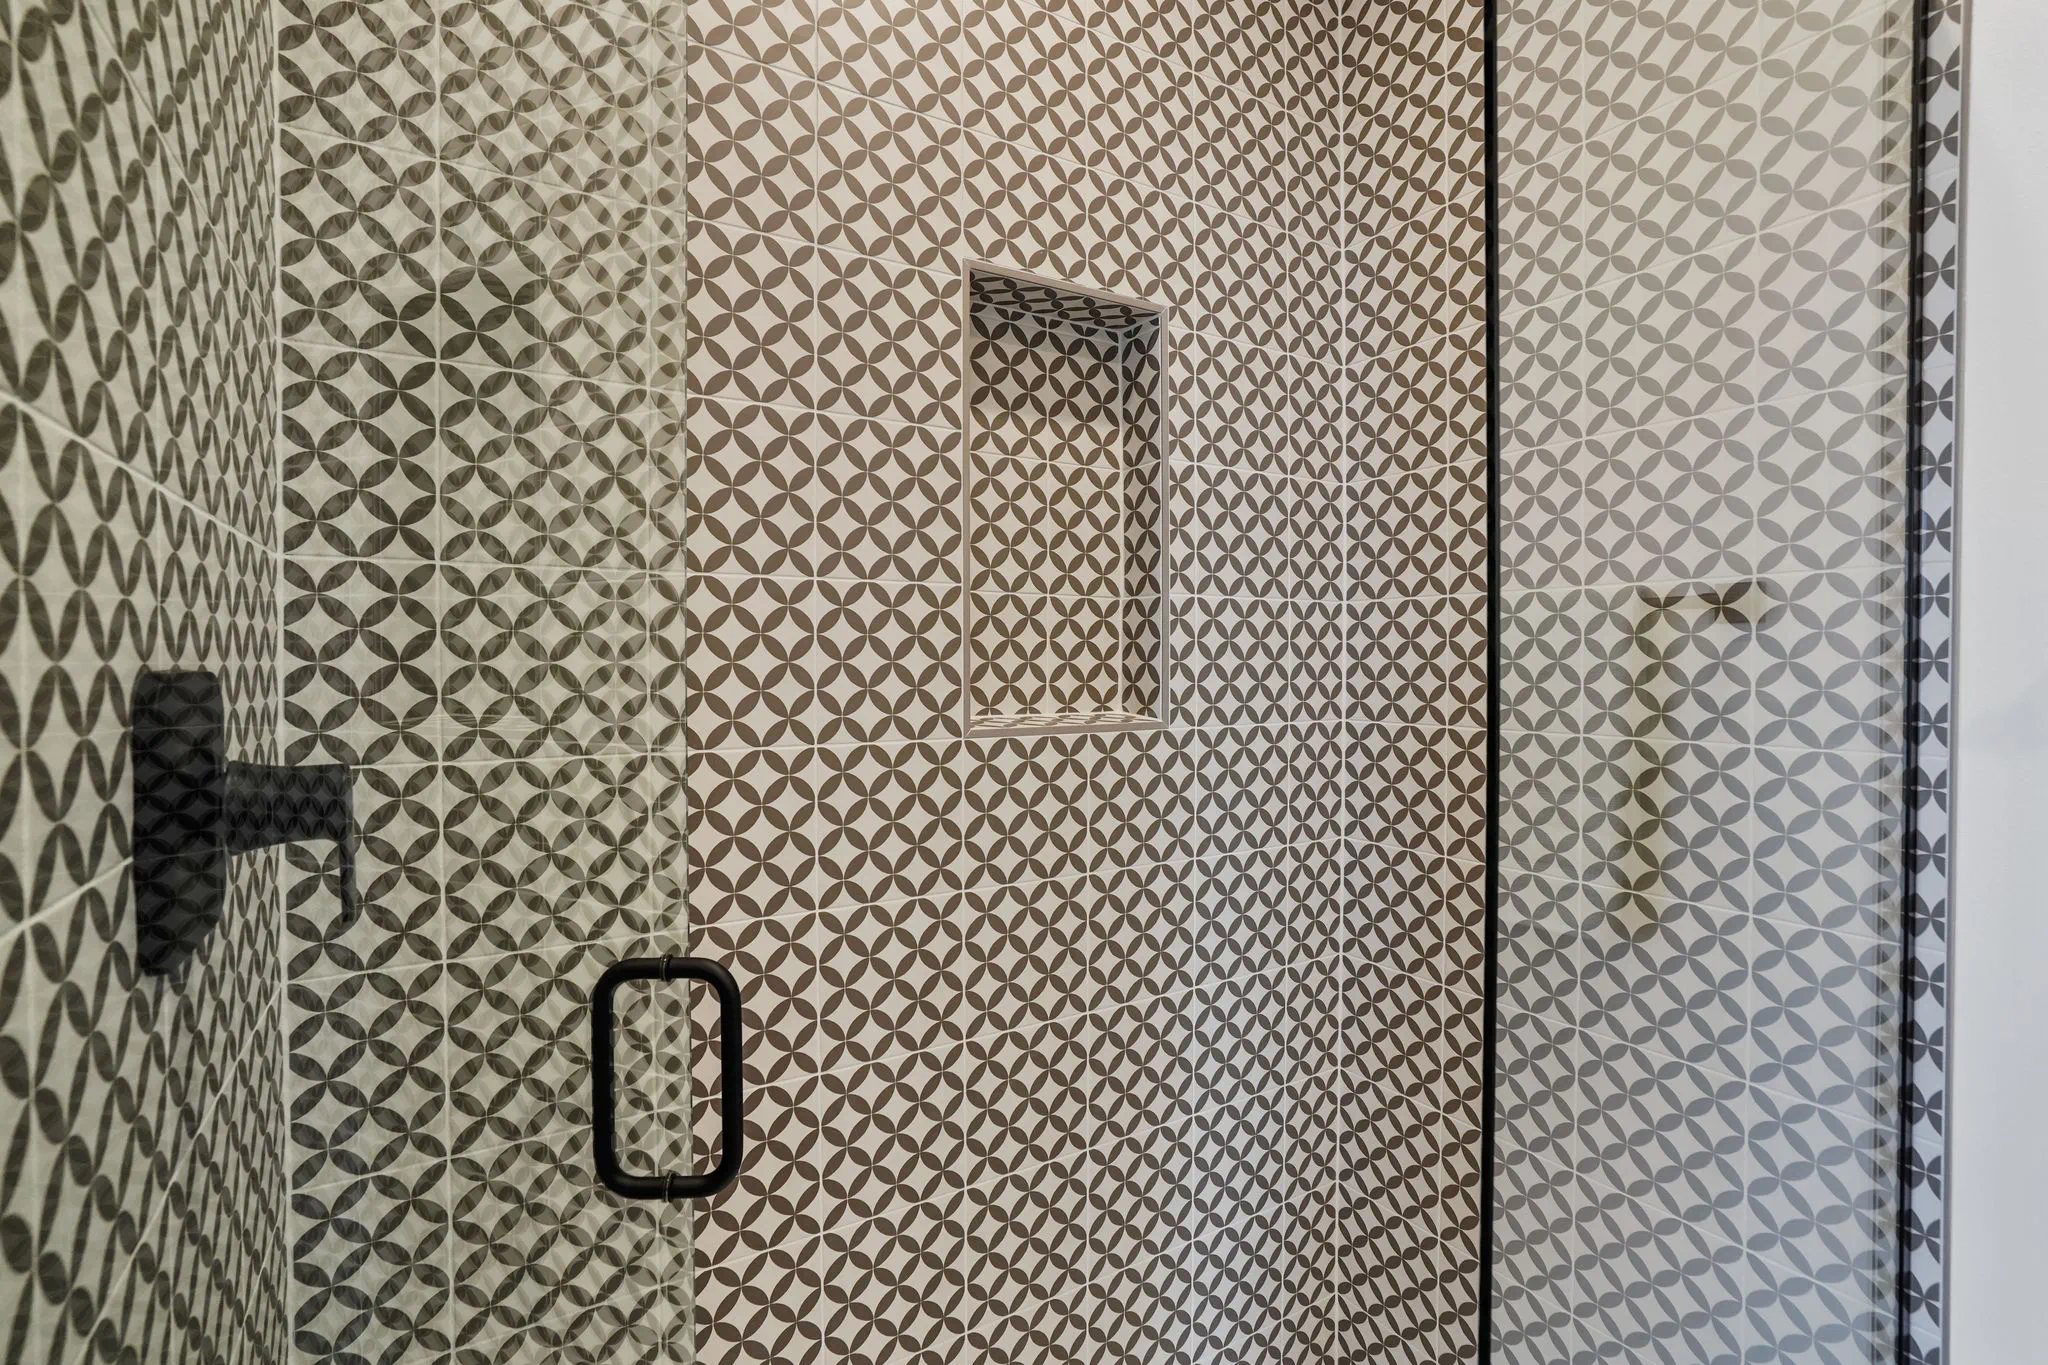 Bathroom Walk-in Shower Floor to Ceiling Geometric Tile Work